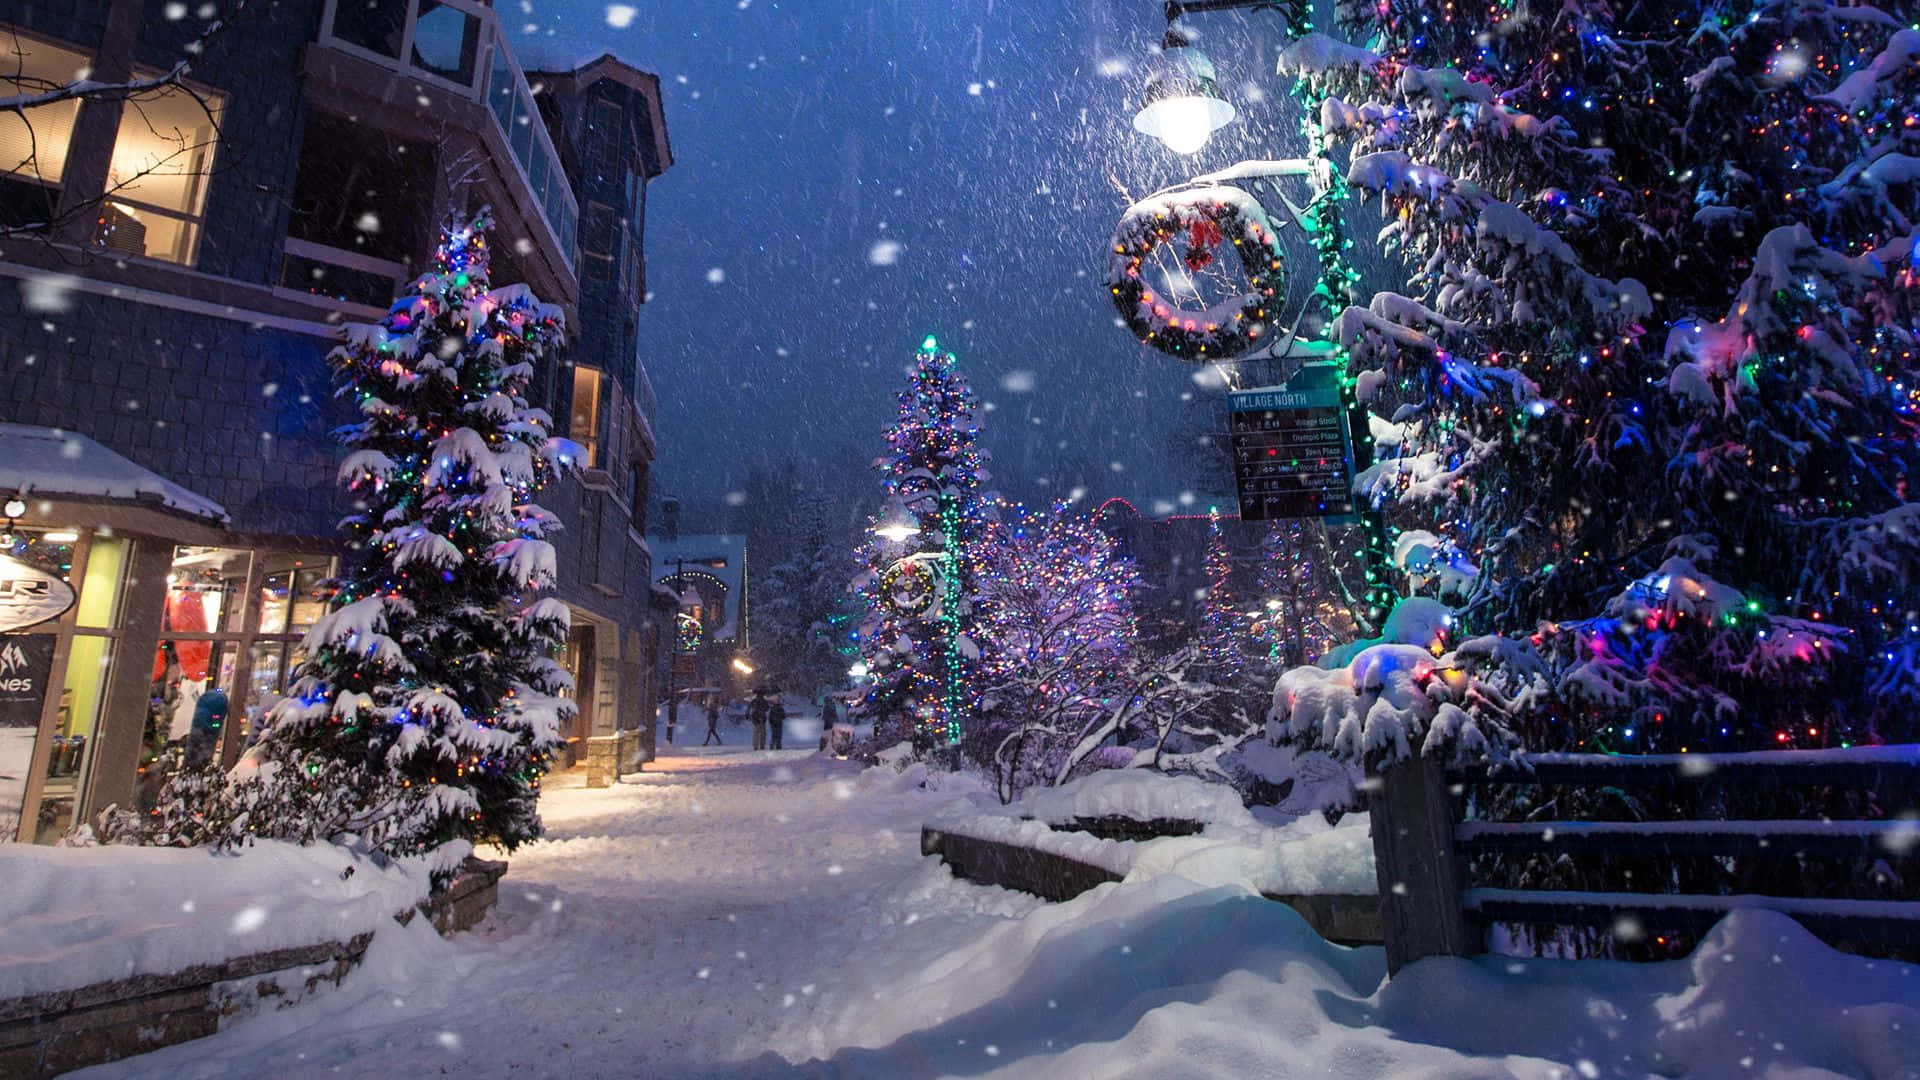 En gade med juletræer og lys i sneen Wallpaper